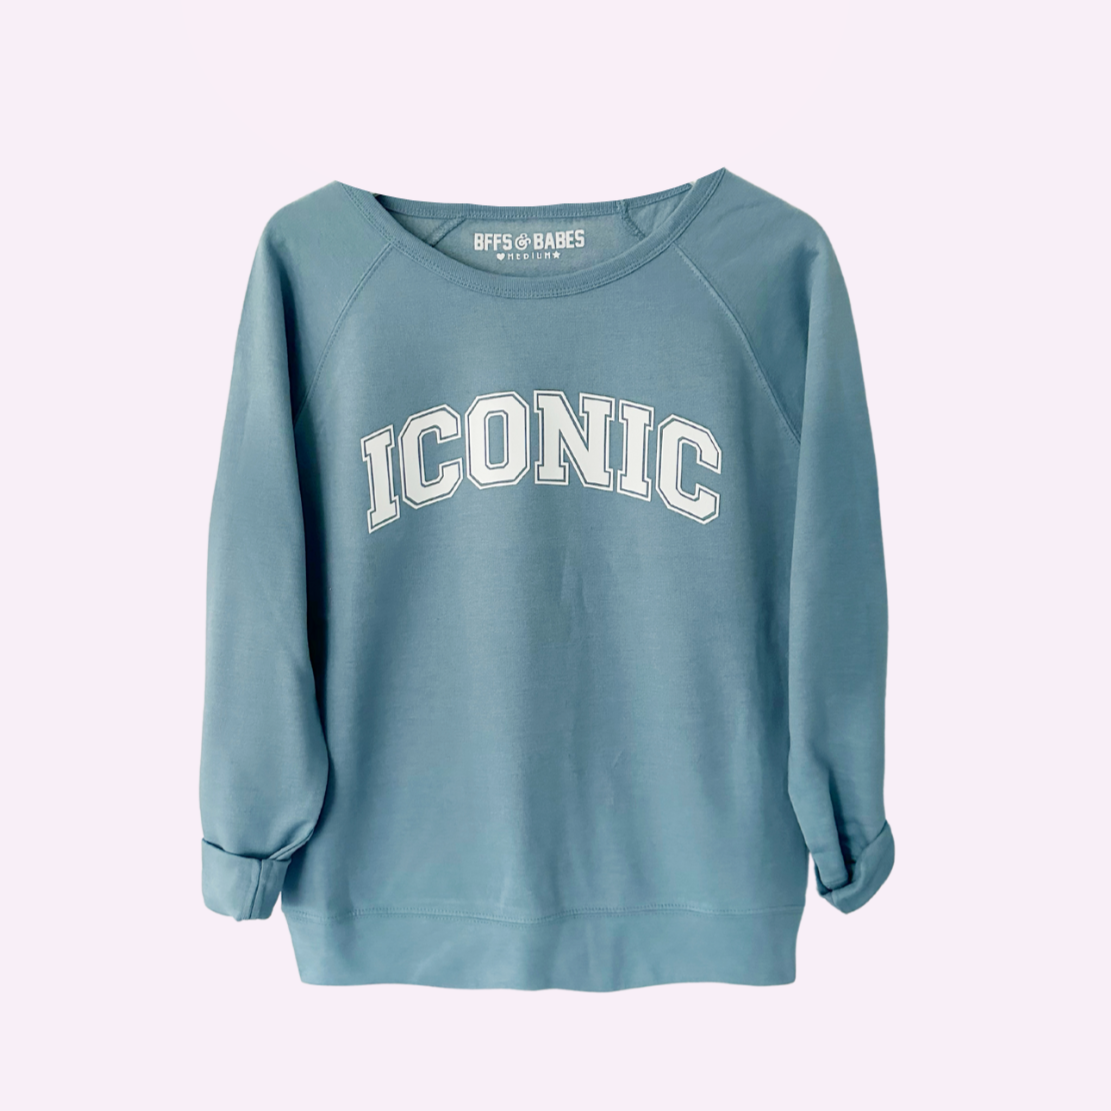 ICONIC ♡ raglan sweatshirt